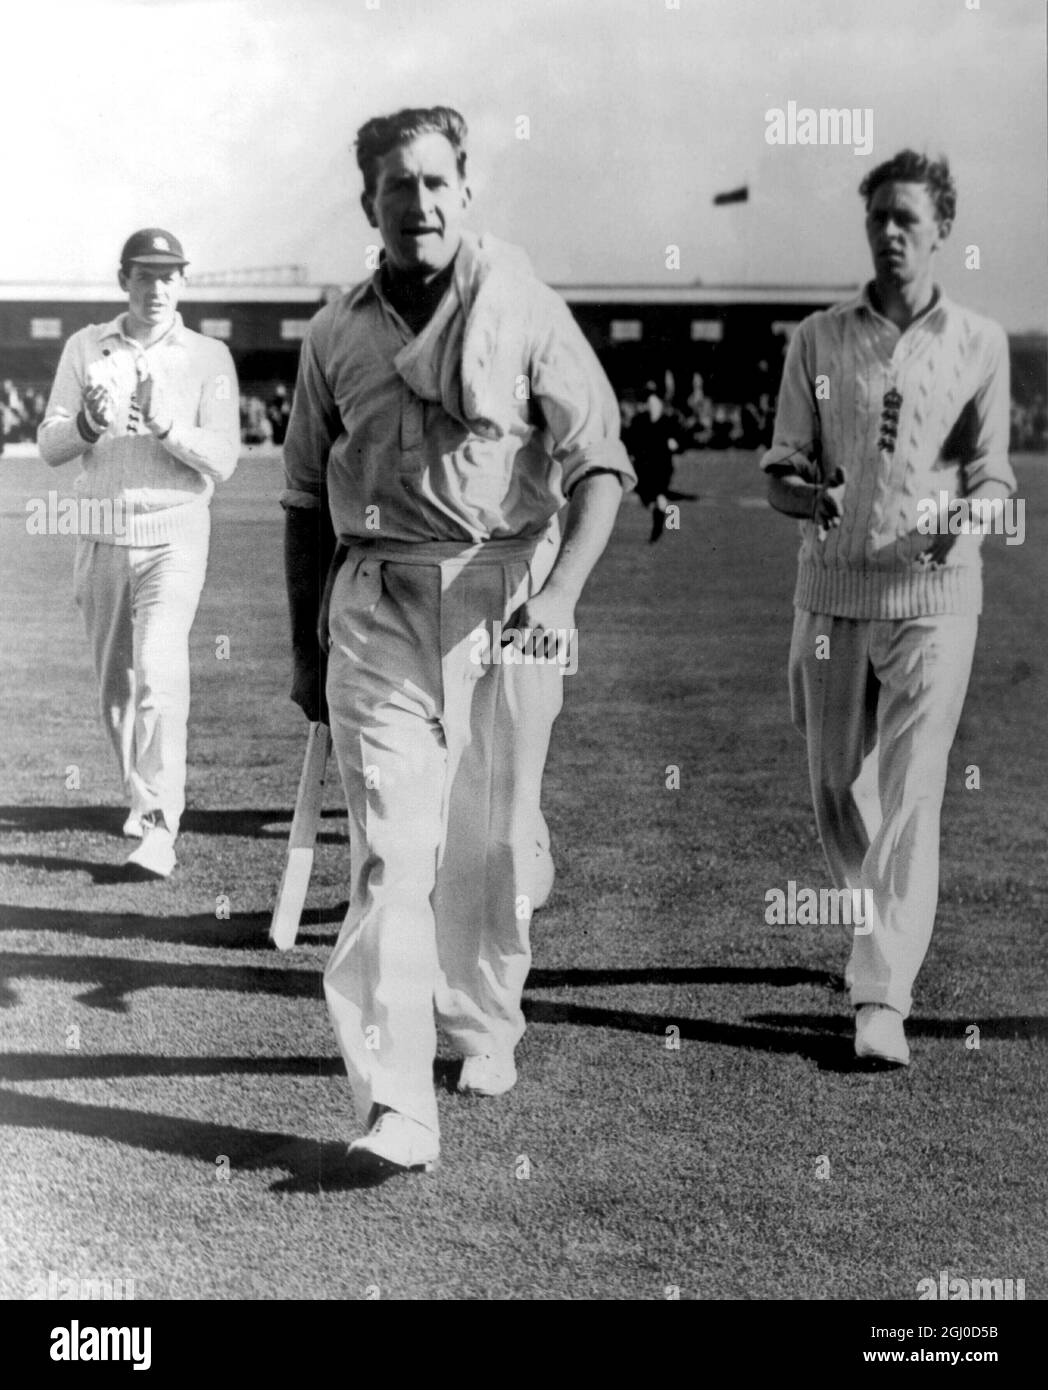 England gegen Australien Jim Laker beim vierten Test bei Old Trafford, als er einen Rekord von 19 Wickets aufstellte. Juli 1956 Stockfoto